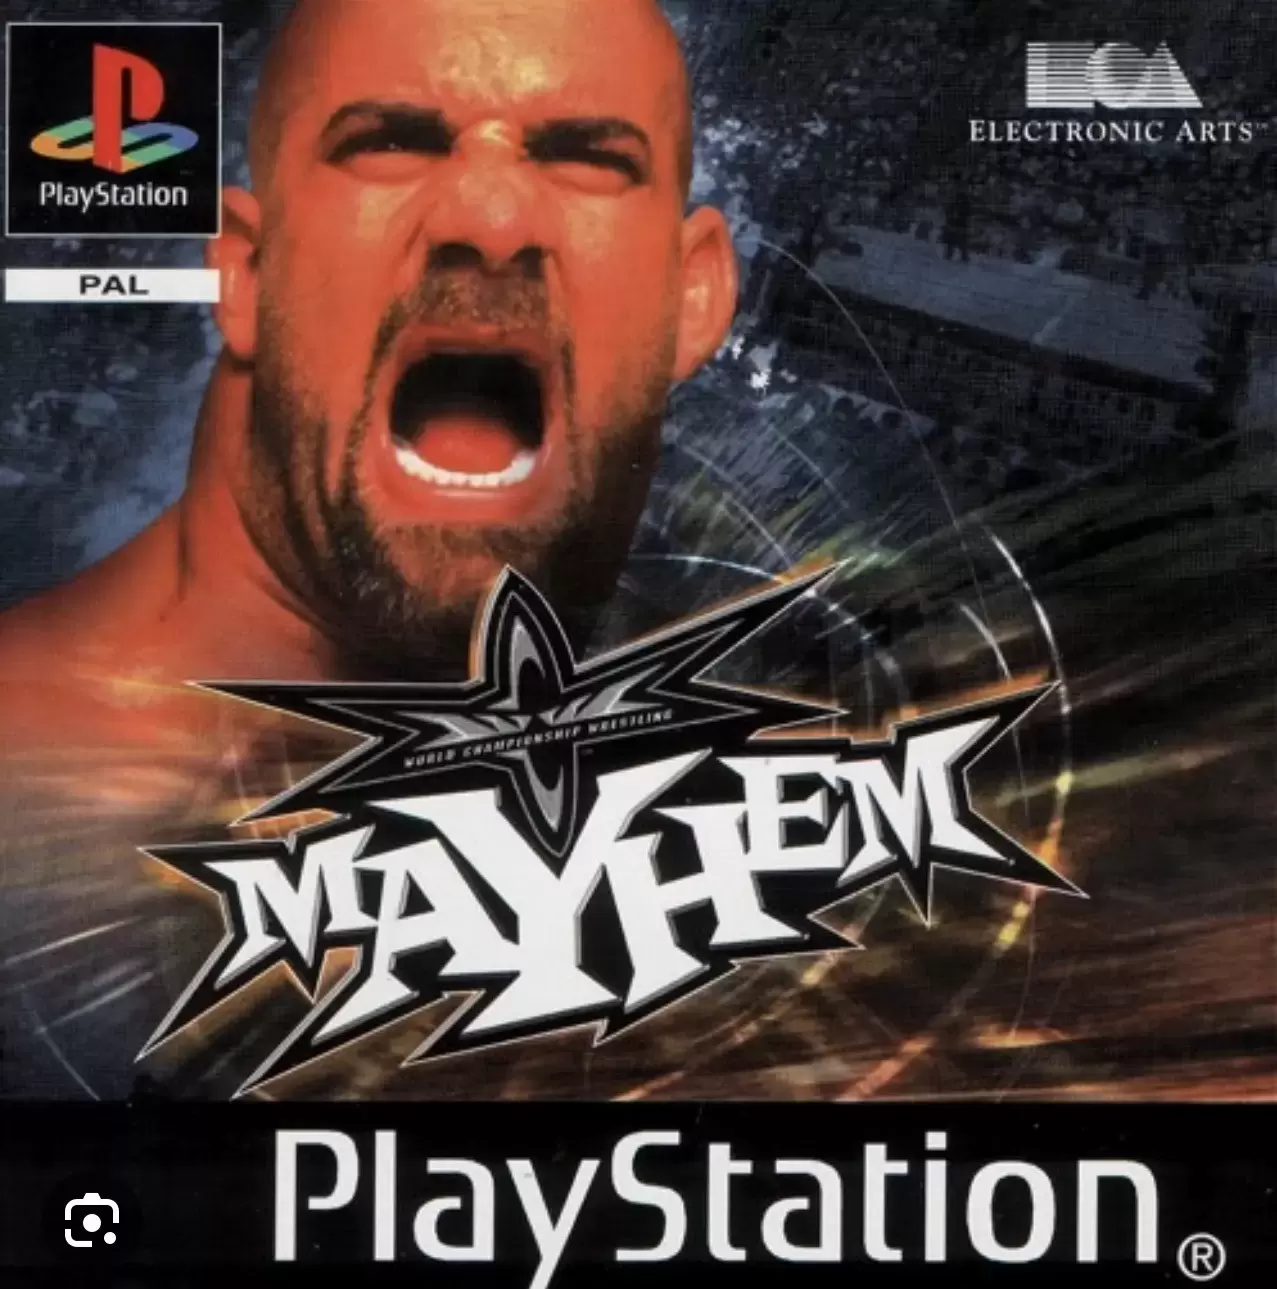 Playstation games - Mayhem